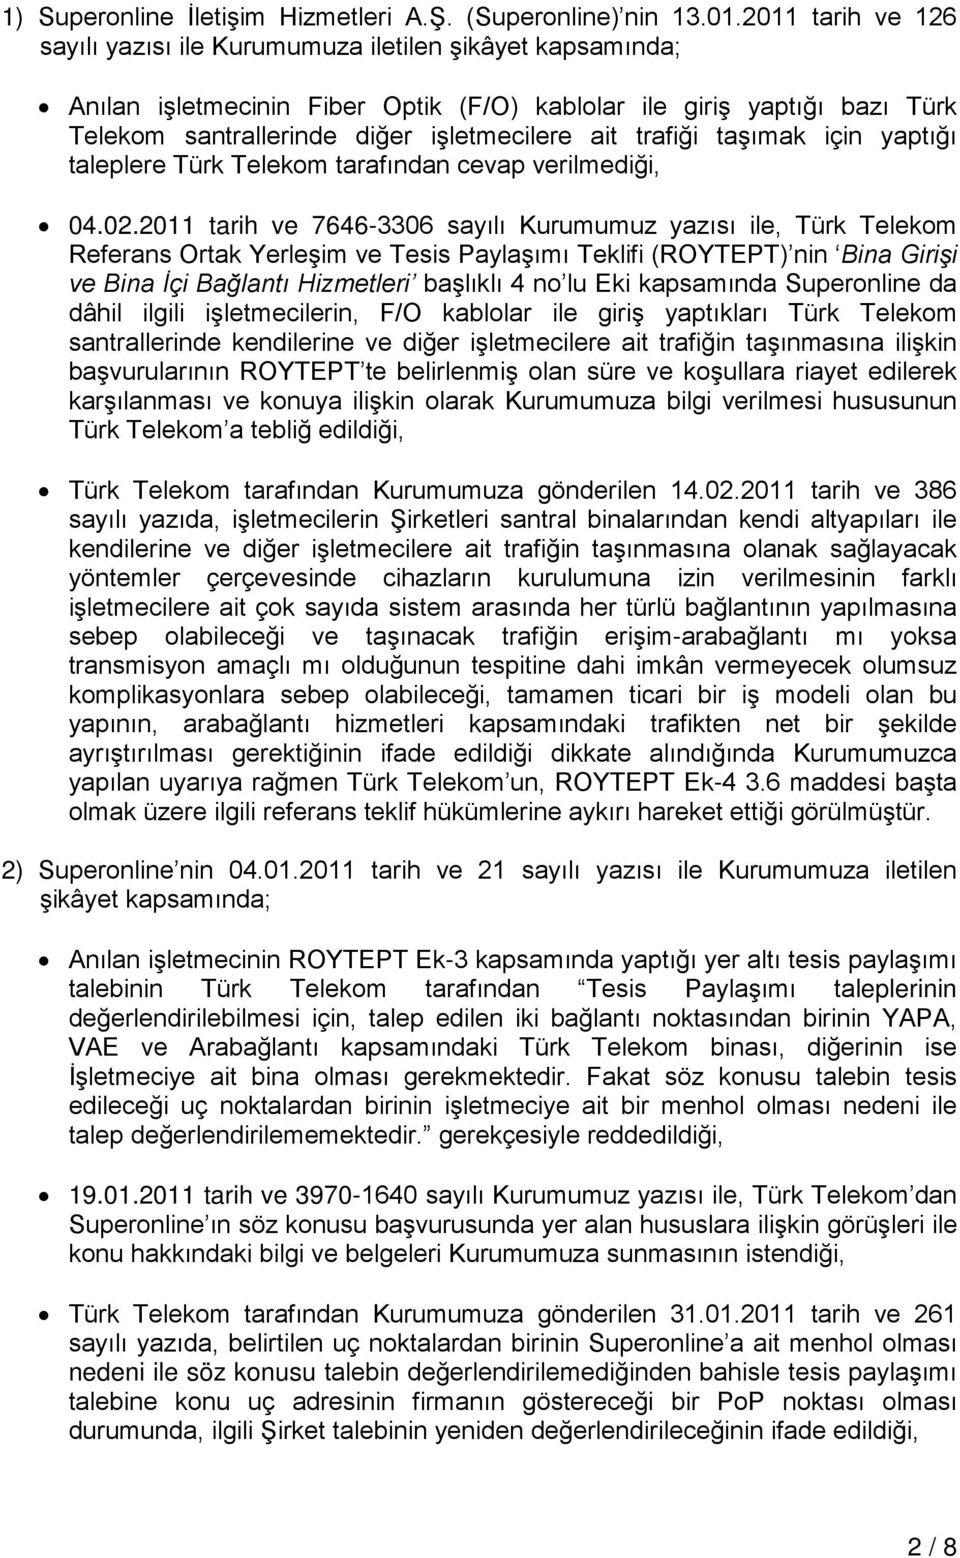 trafiği taşımak için yaptığı taleplere Türk Telekom tarafından cevap verilmediği, 04.02.